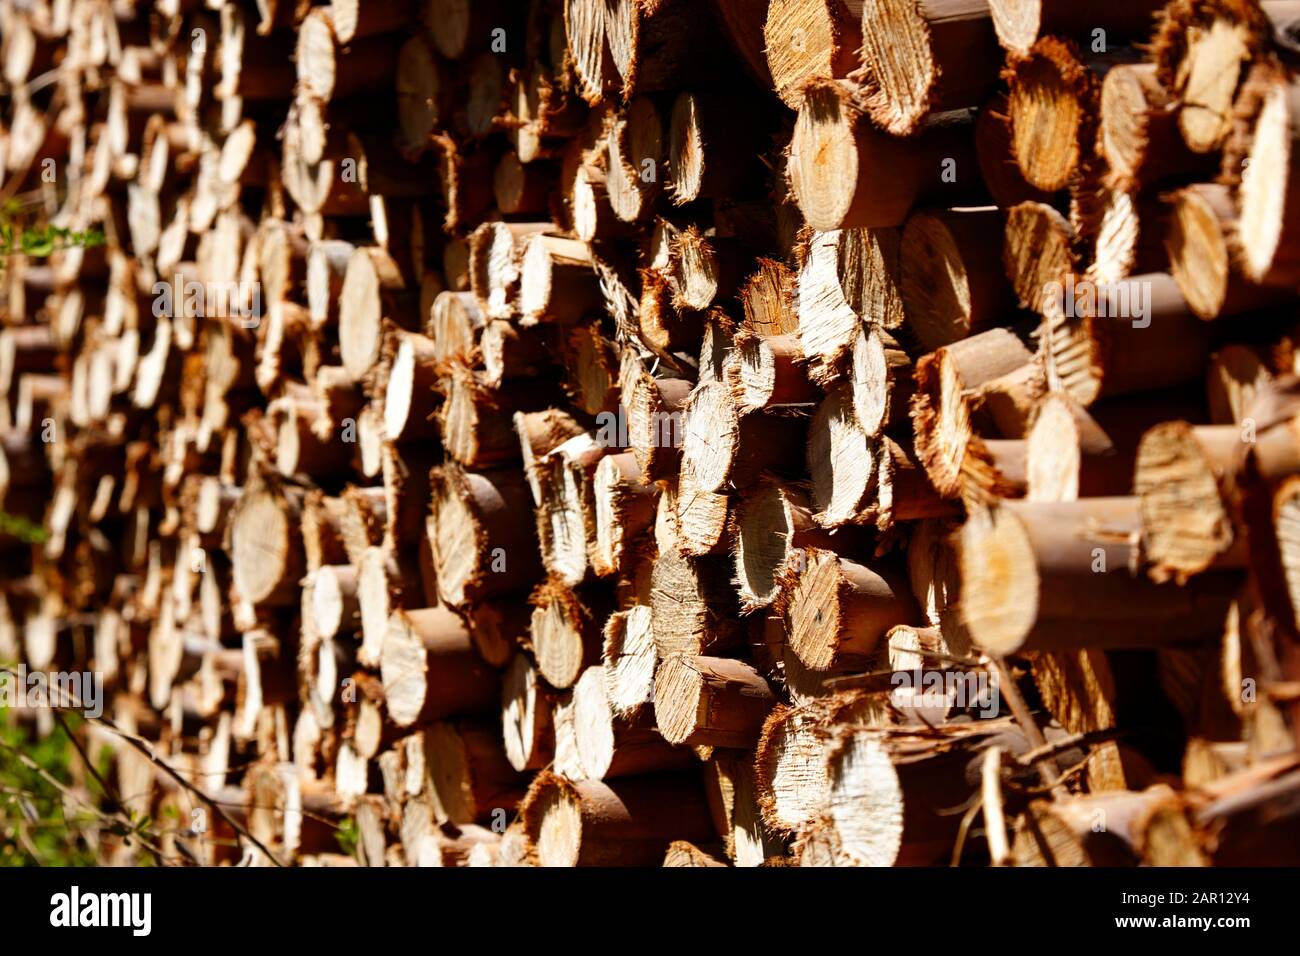 Haufen geschnittenes Eukalypusholz für Winterbrennholz los Pellinen maule chile Stockfoto